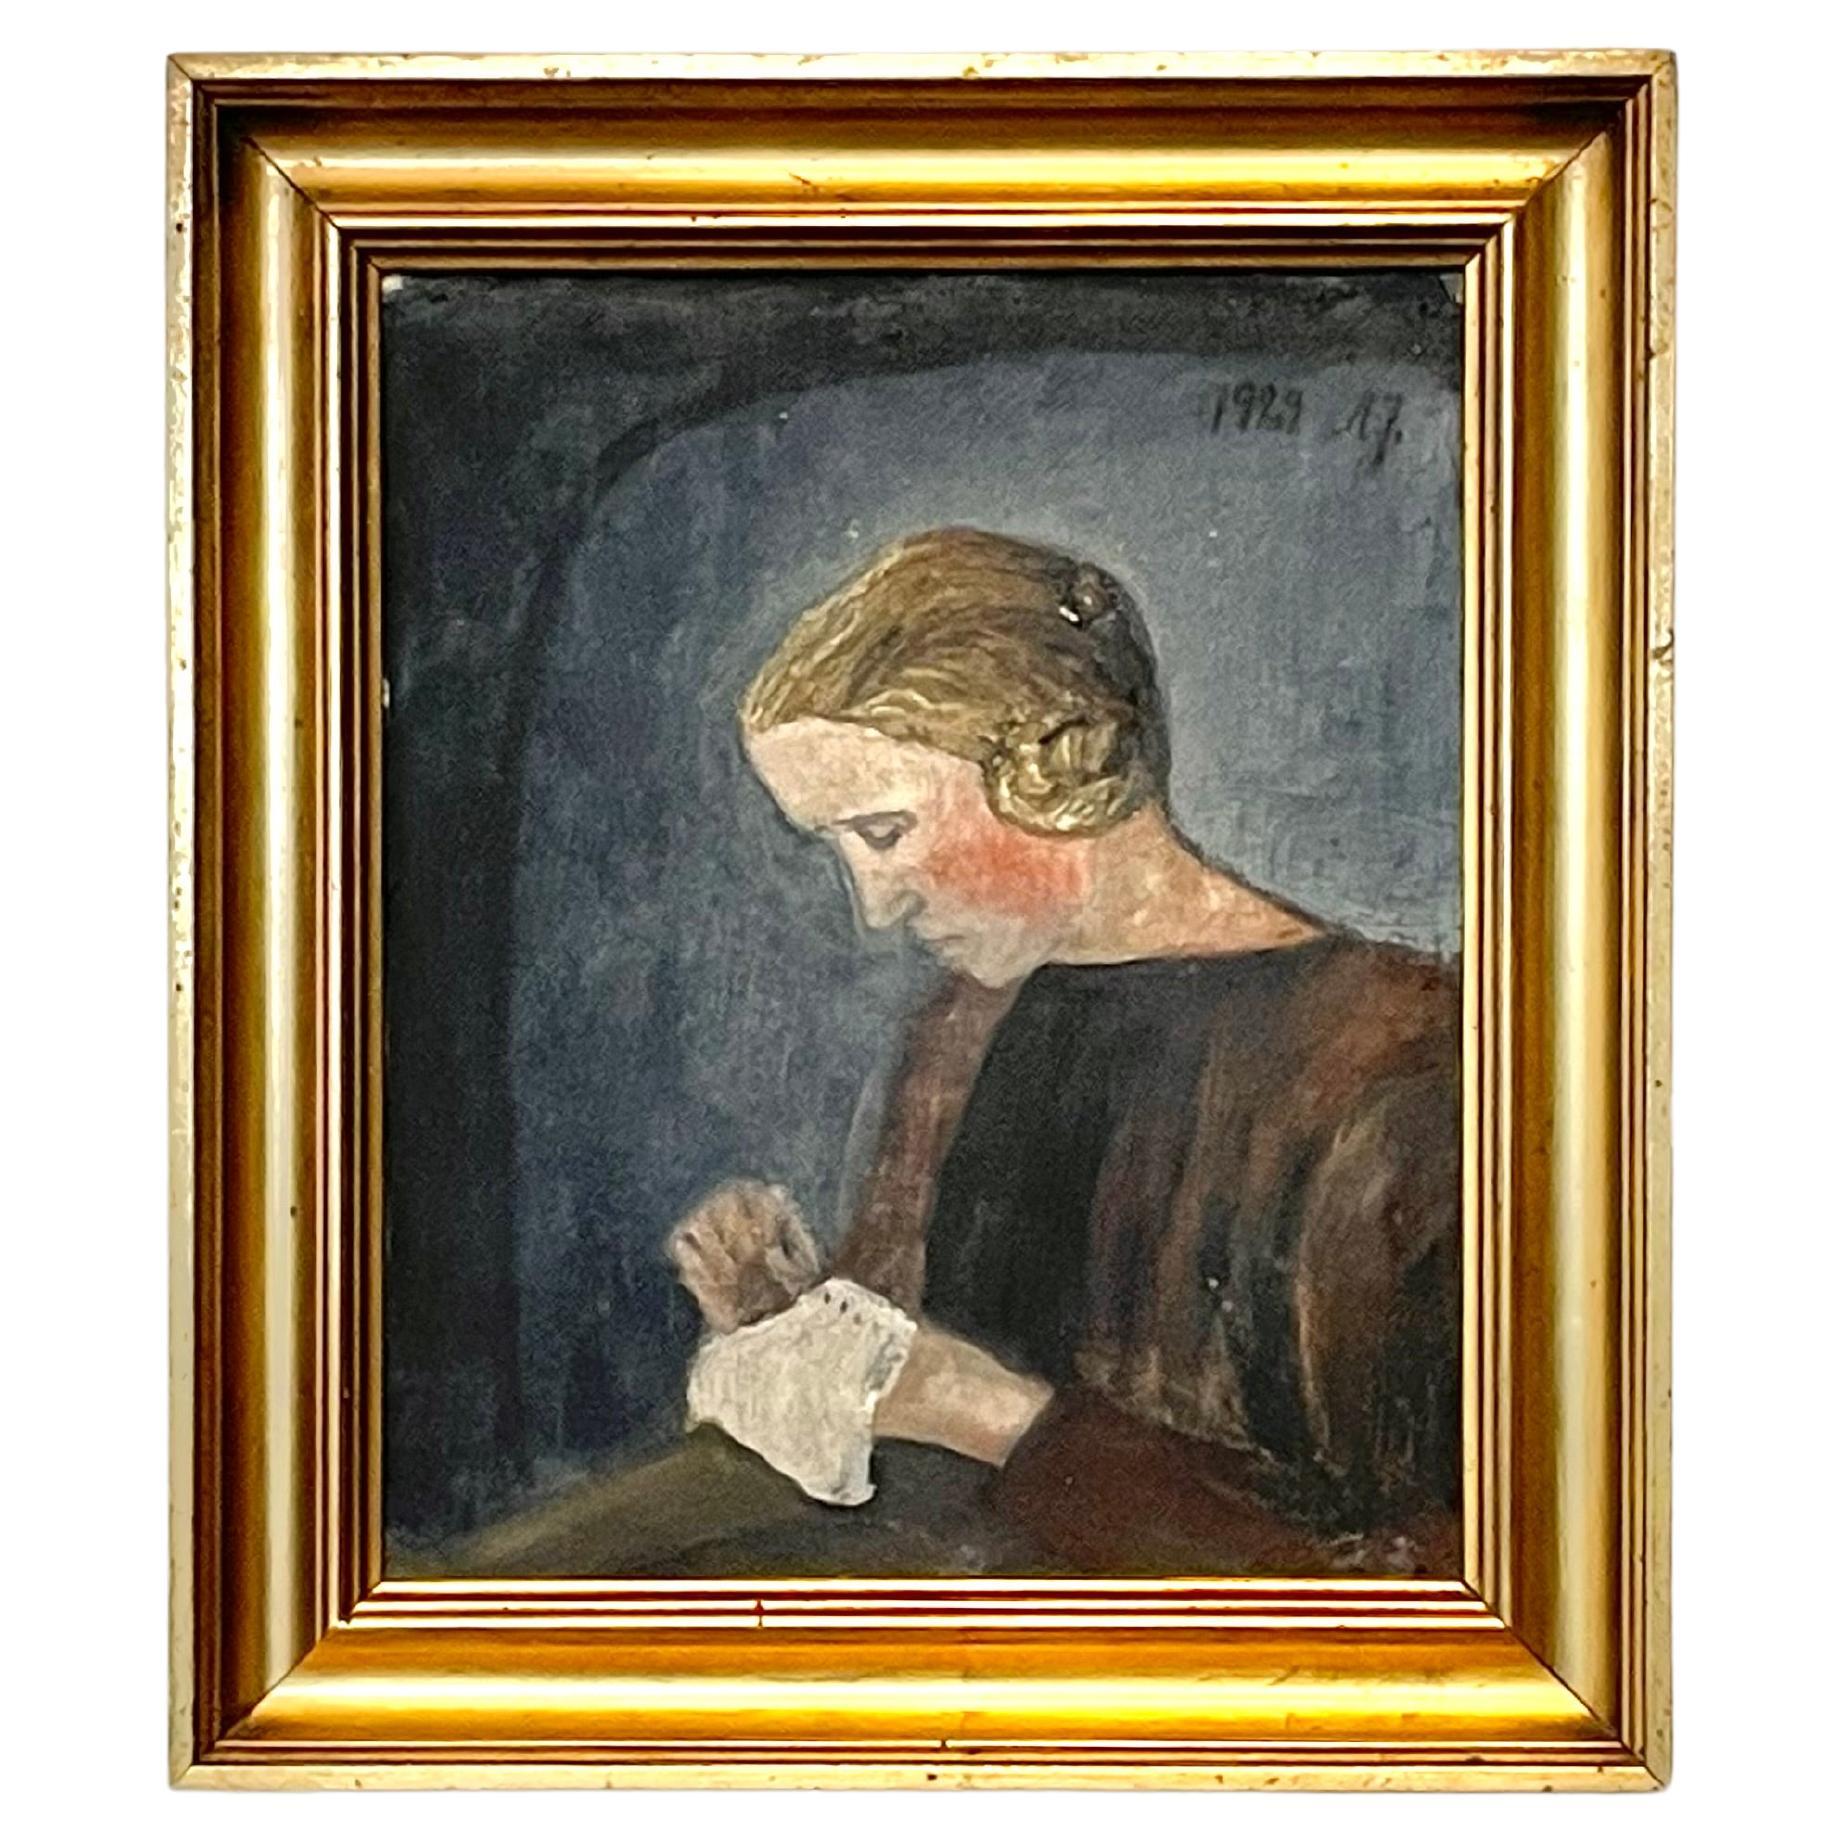 Originales dänisches Ölporträtgemälde einer Frau mit Nadelspitze, Vintage